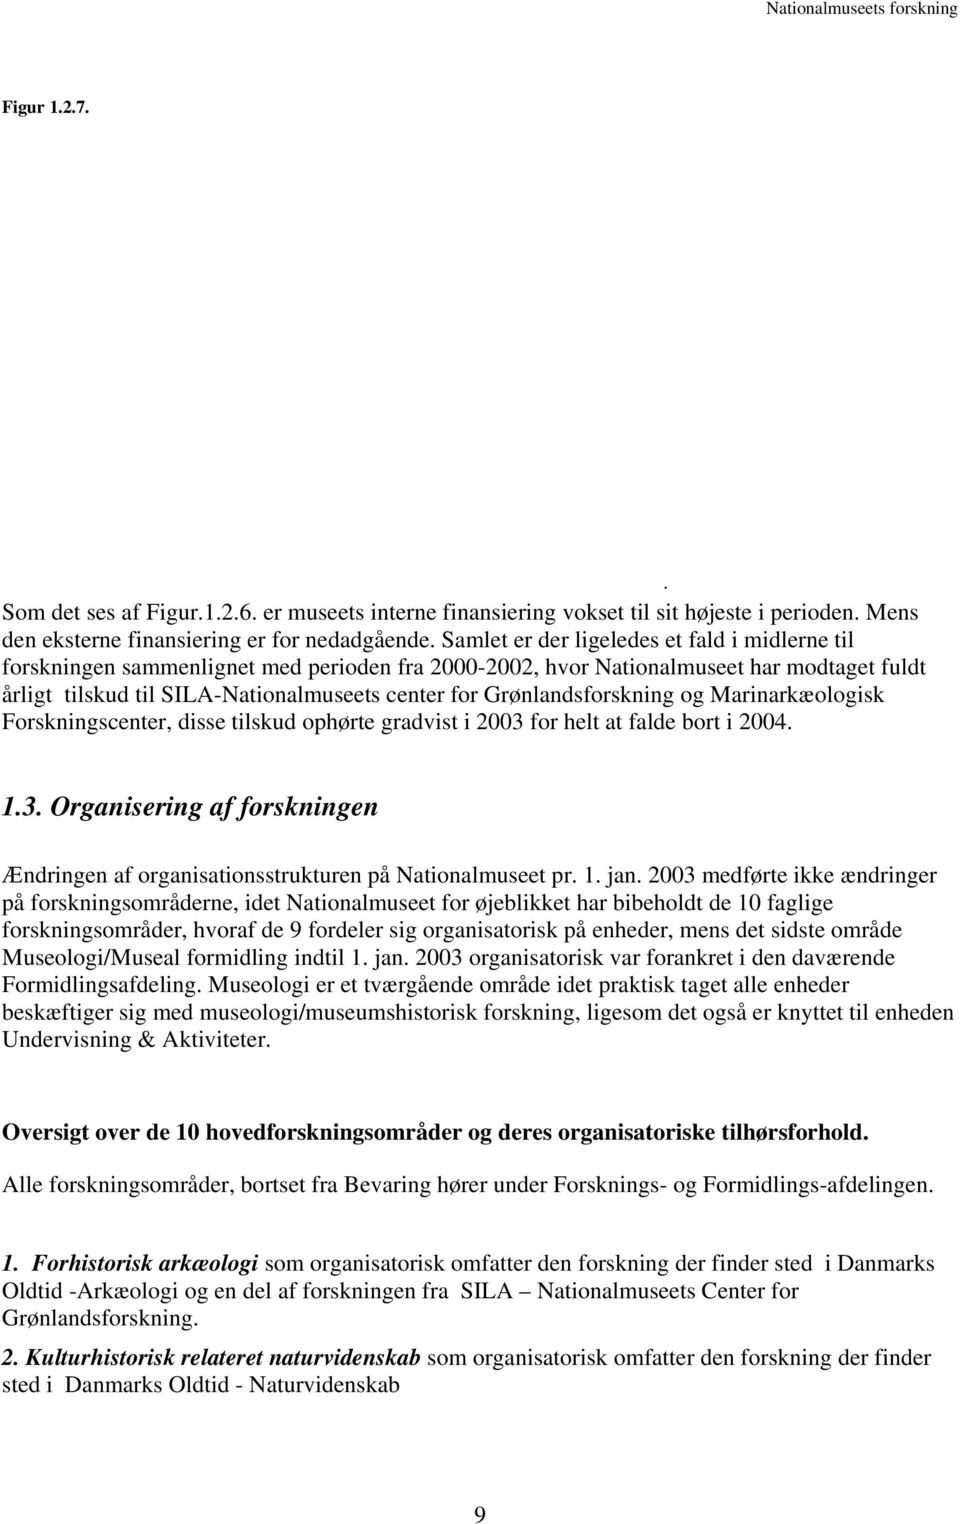 Grønlandsforskning og Marinarkæologisk Forskningscenter, disse tilskud ophørte gradvist i 2003 for helt at falde bort i 2004. 1.3. Organisering af forskningen Ændringen af organisationsstrukturen på Nationalmuseet pr.